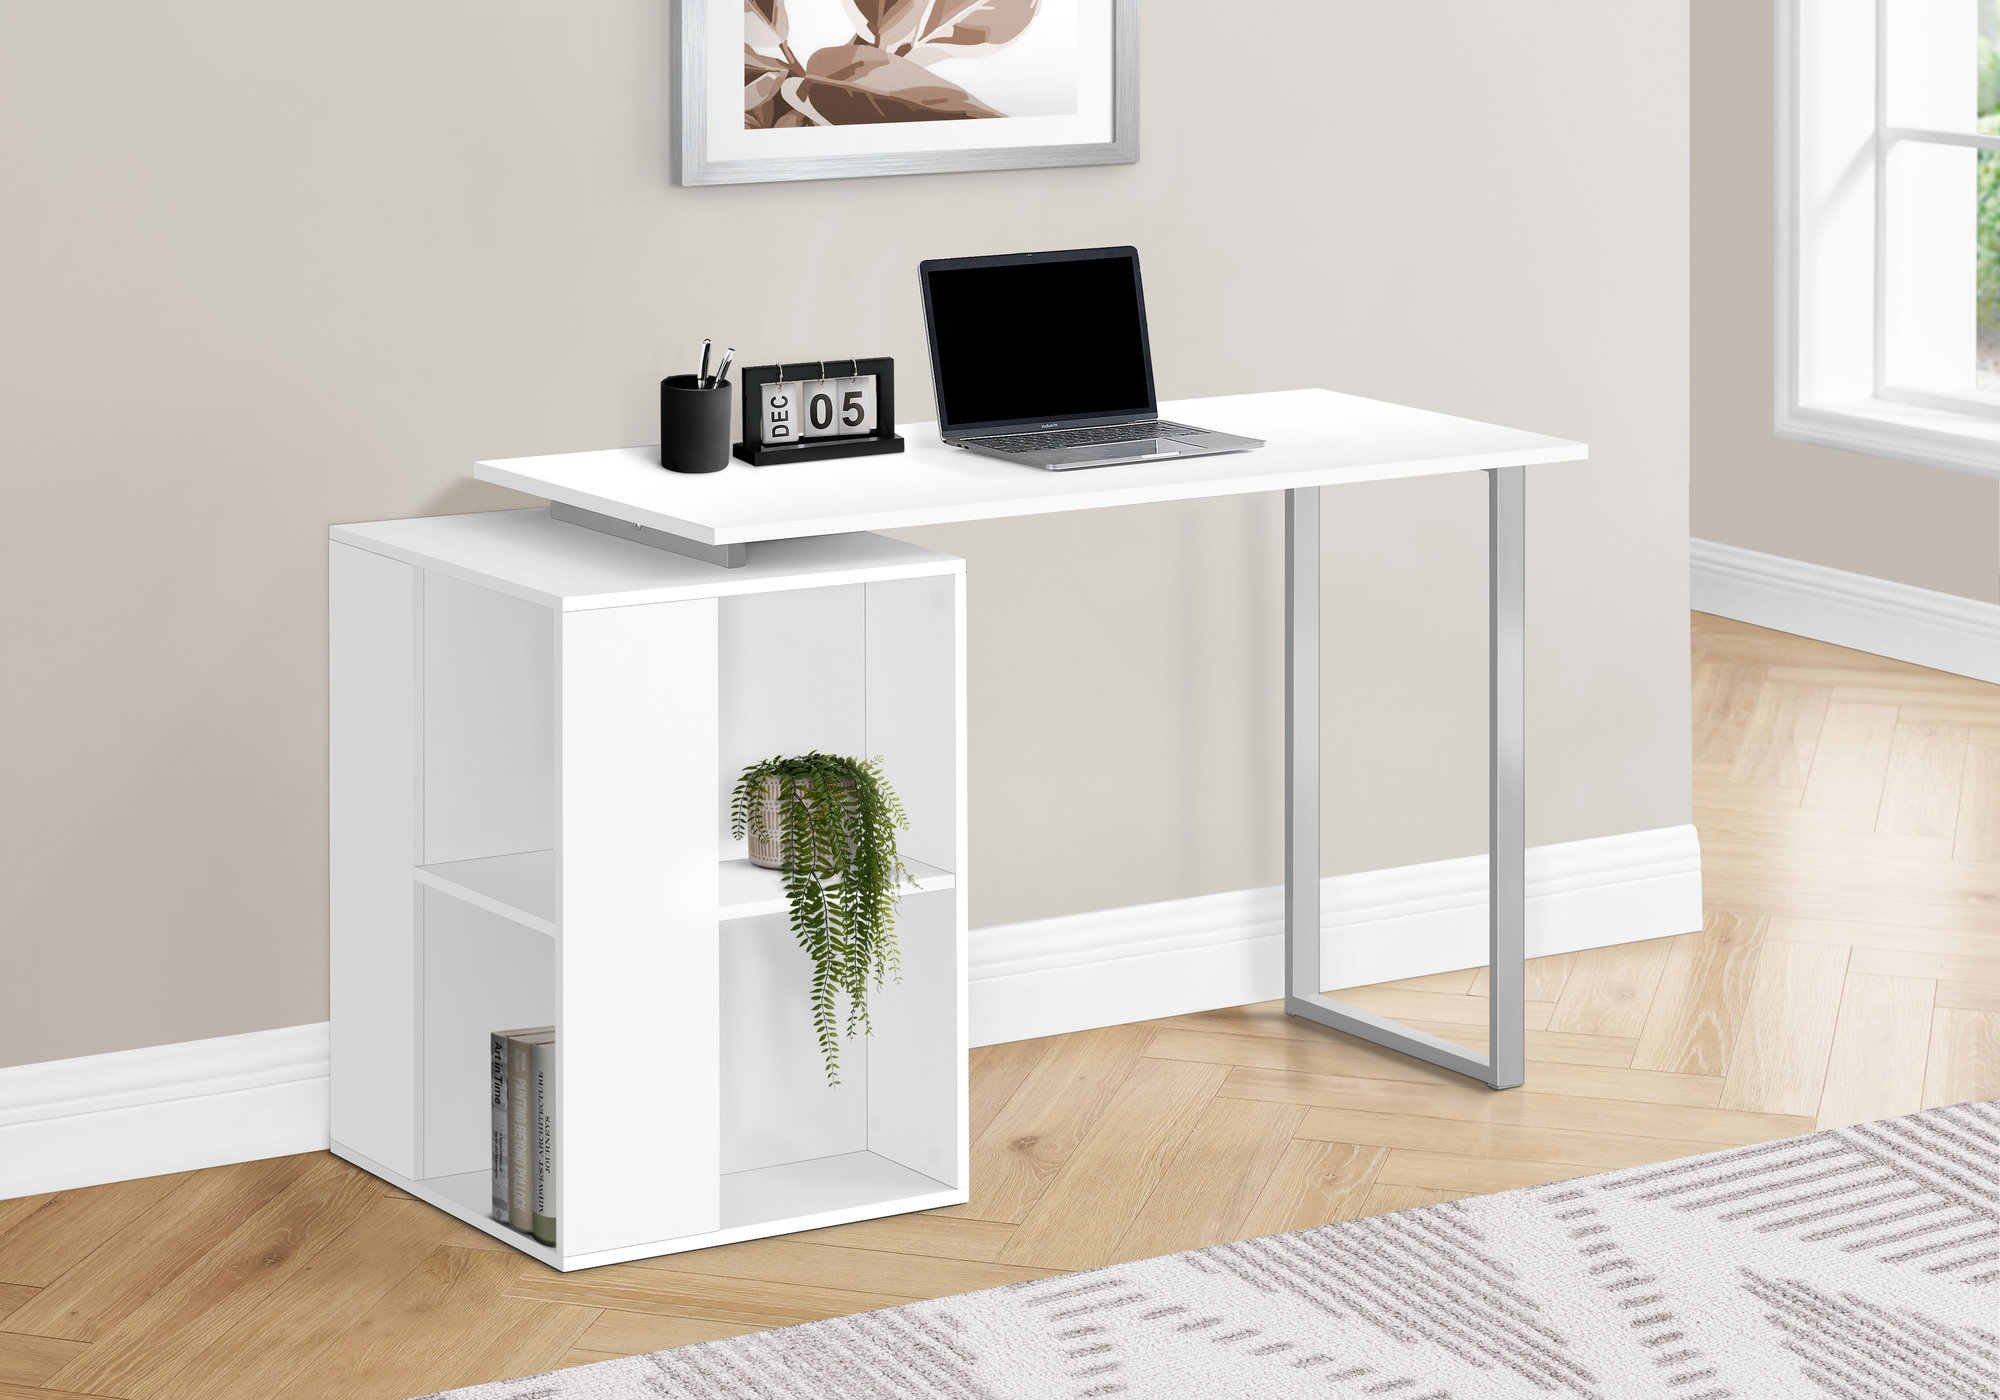 https://assets.wfcdn.com/im/7705780/compr-r85/2275/227503137/computer-desk-home-office-left-right-set-up-storage-shelves-55l-work-laptop-metal-white.jpg